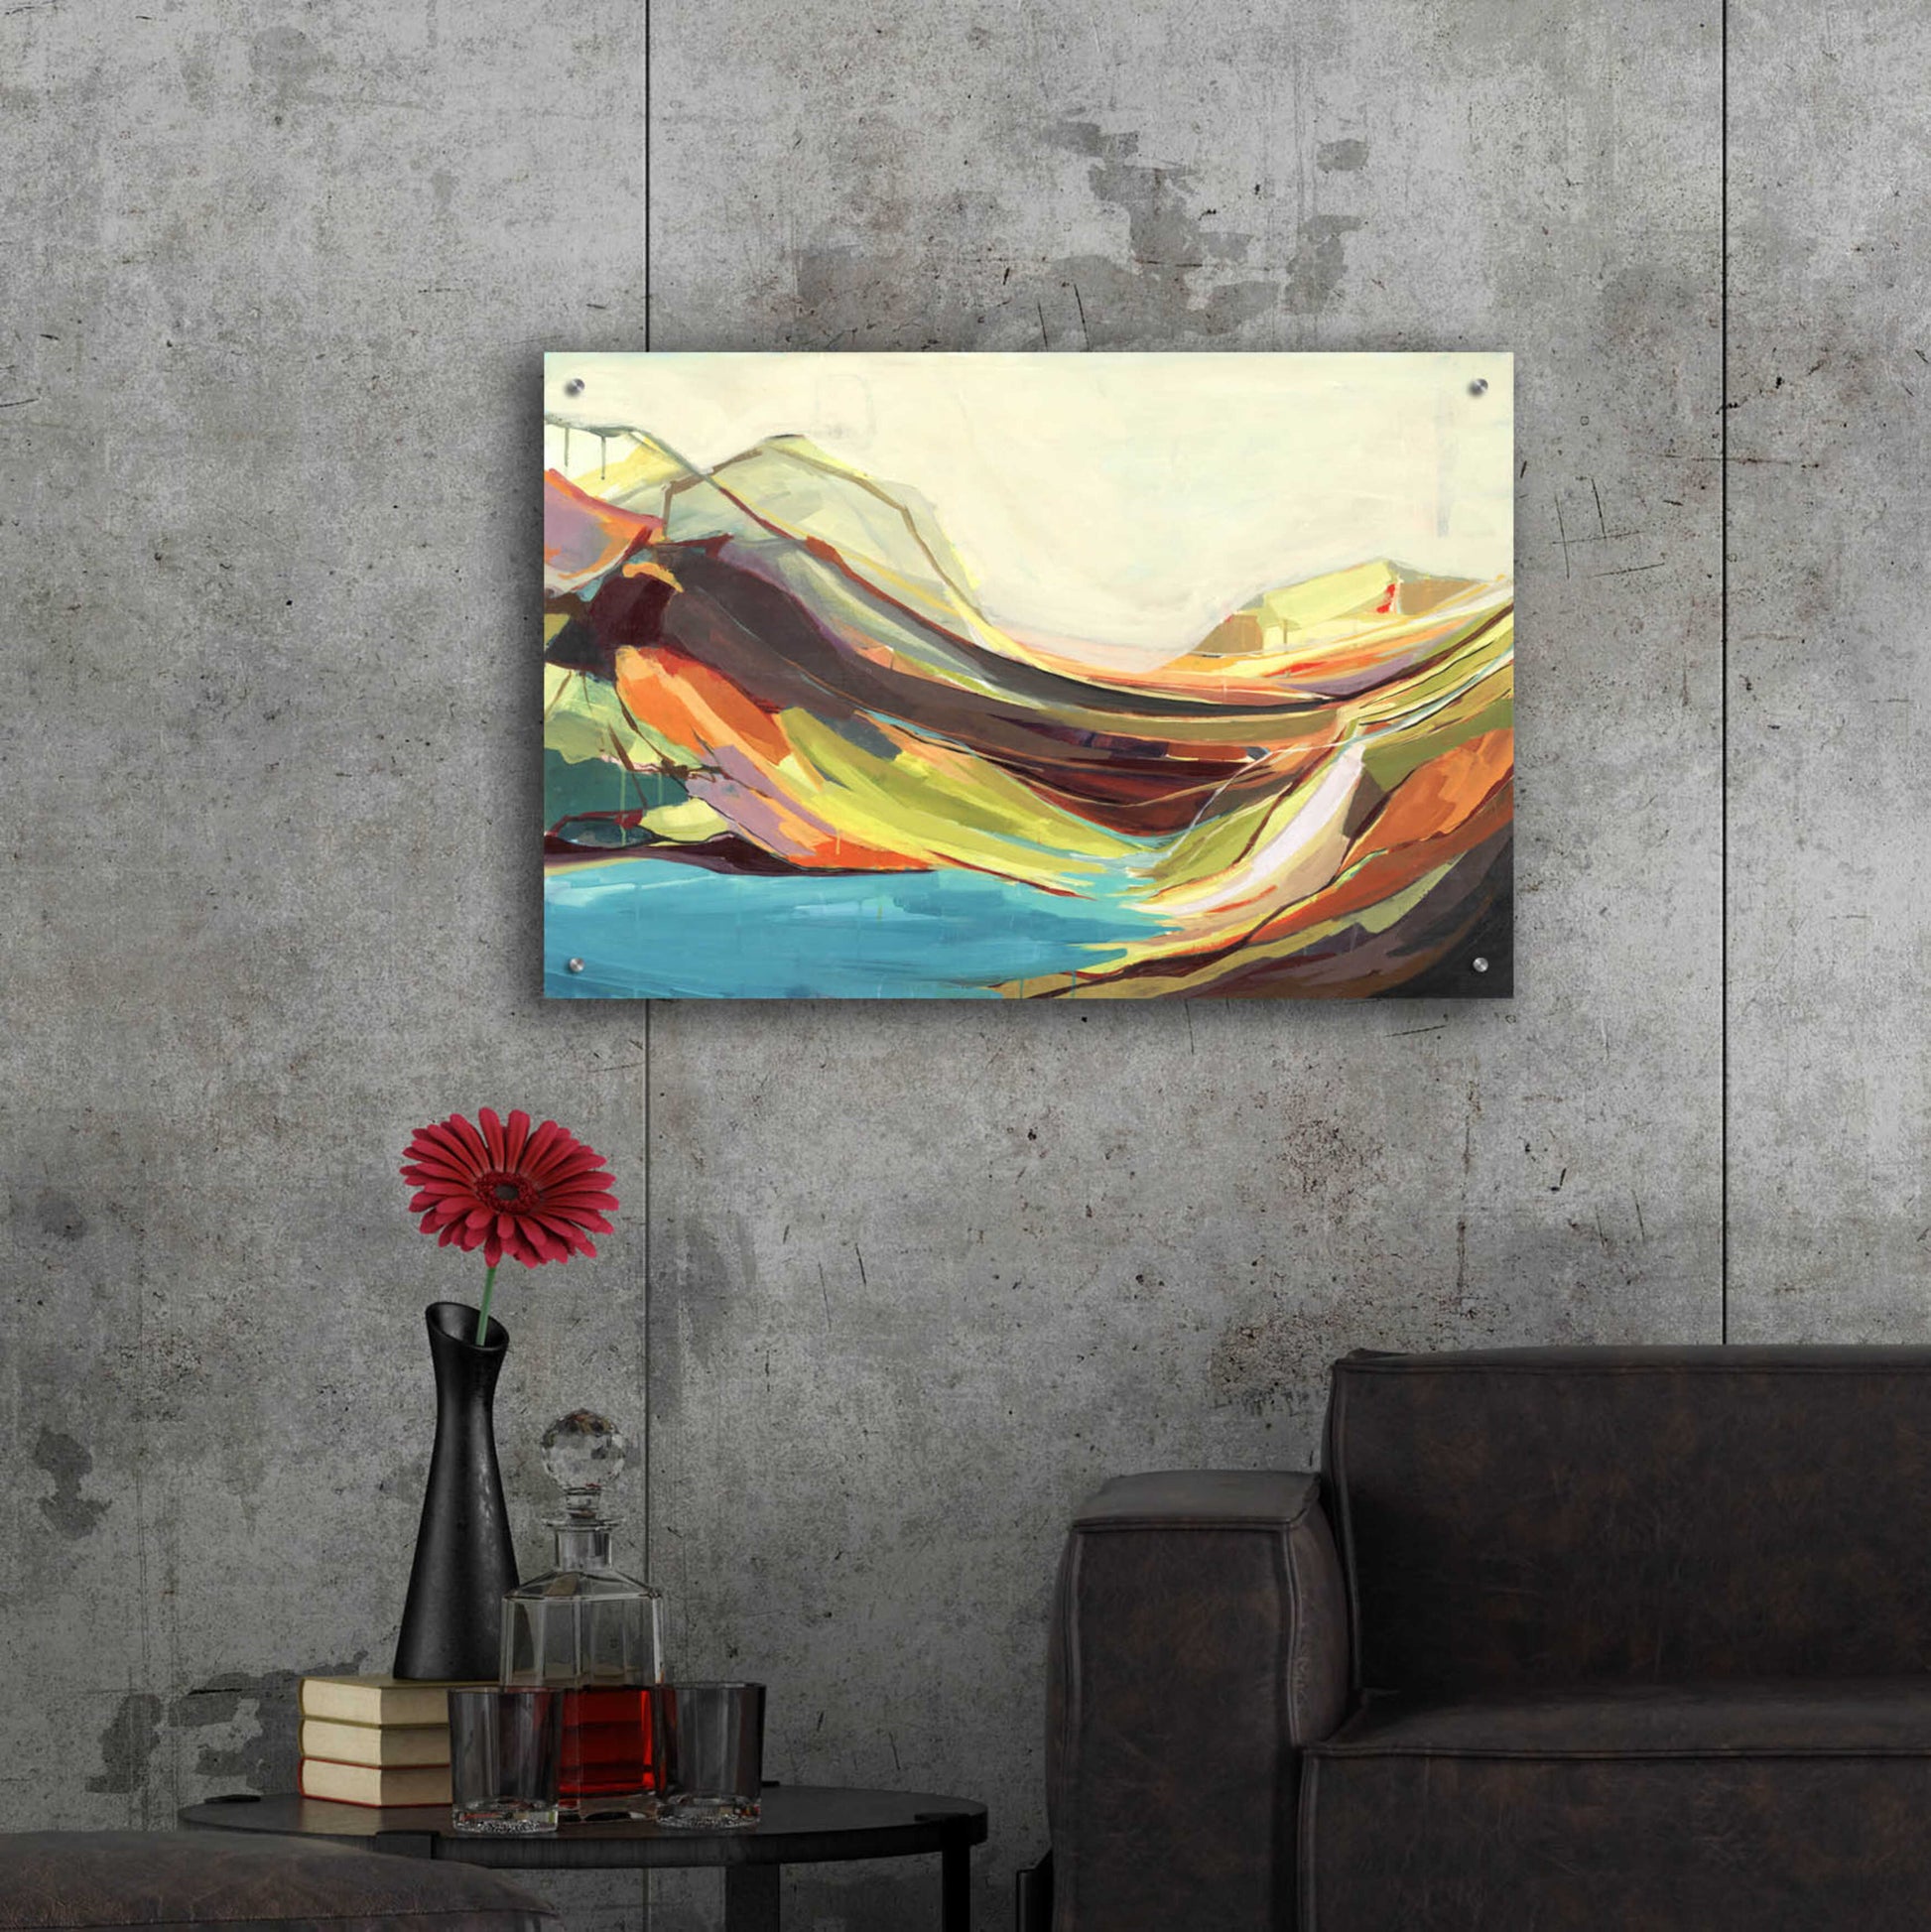 Epic Art 'Mount Desert Isle' by Amanda Hawkins, Acrylic Glass Wall Art,36x24